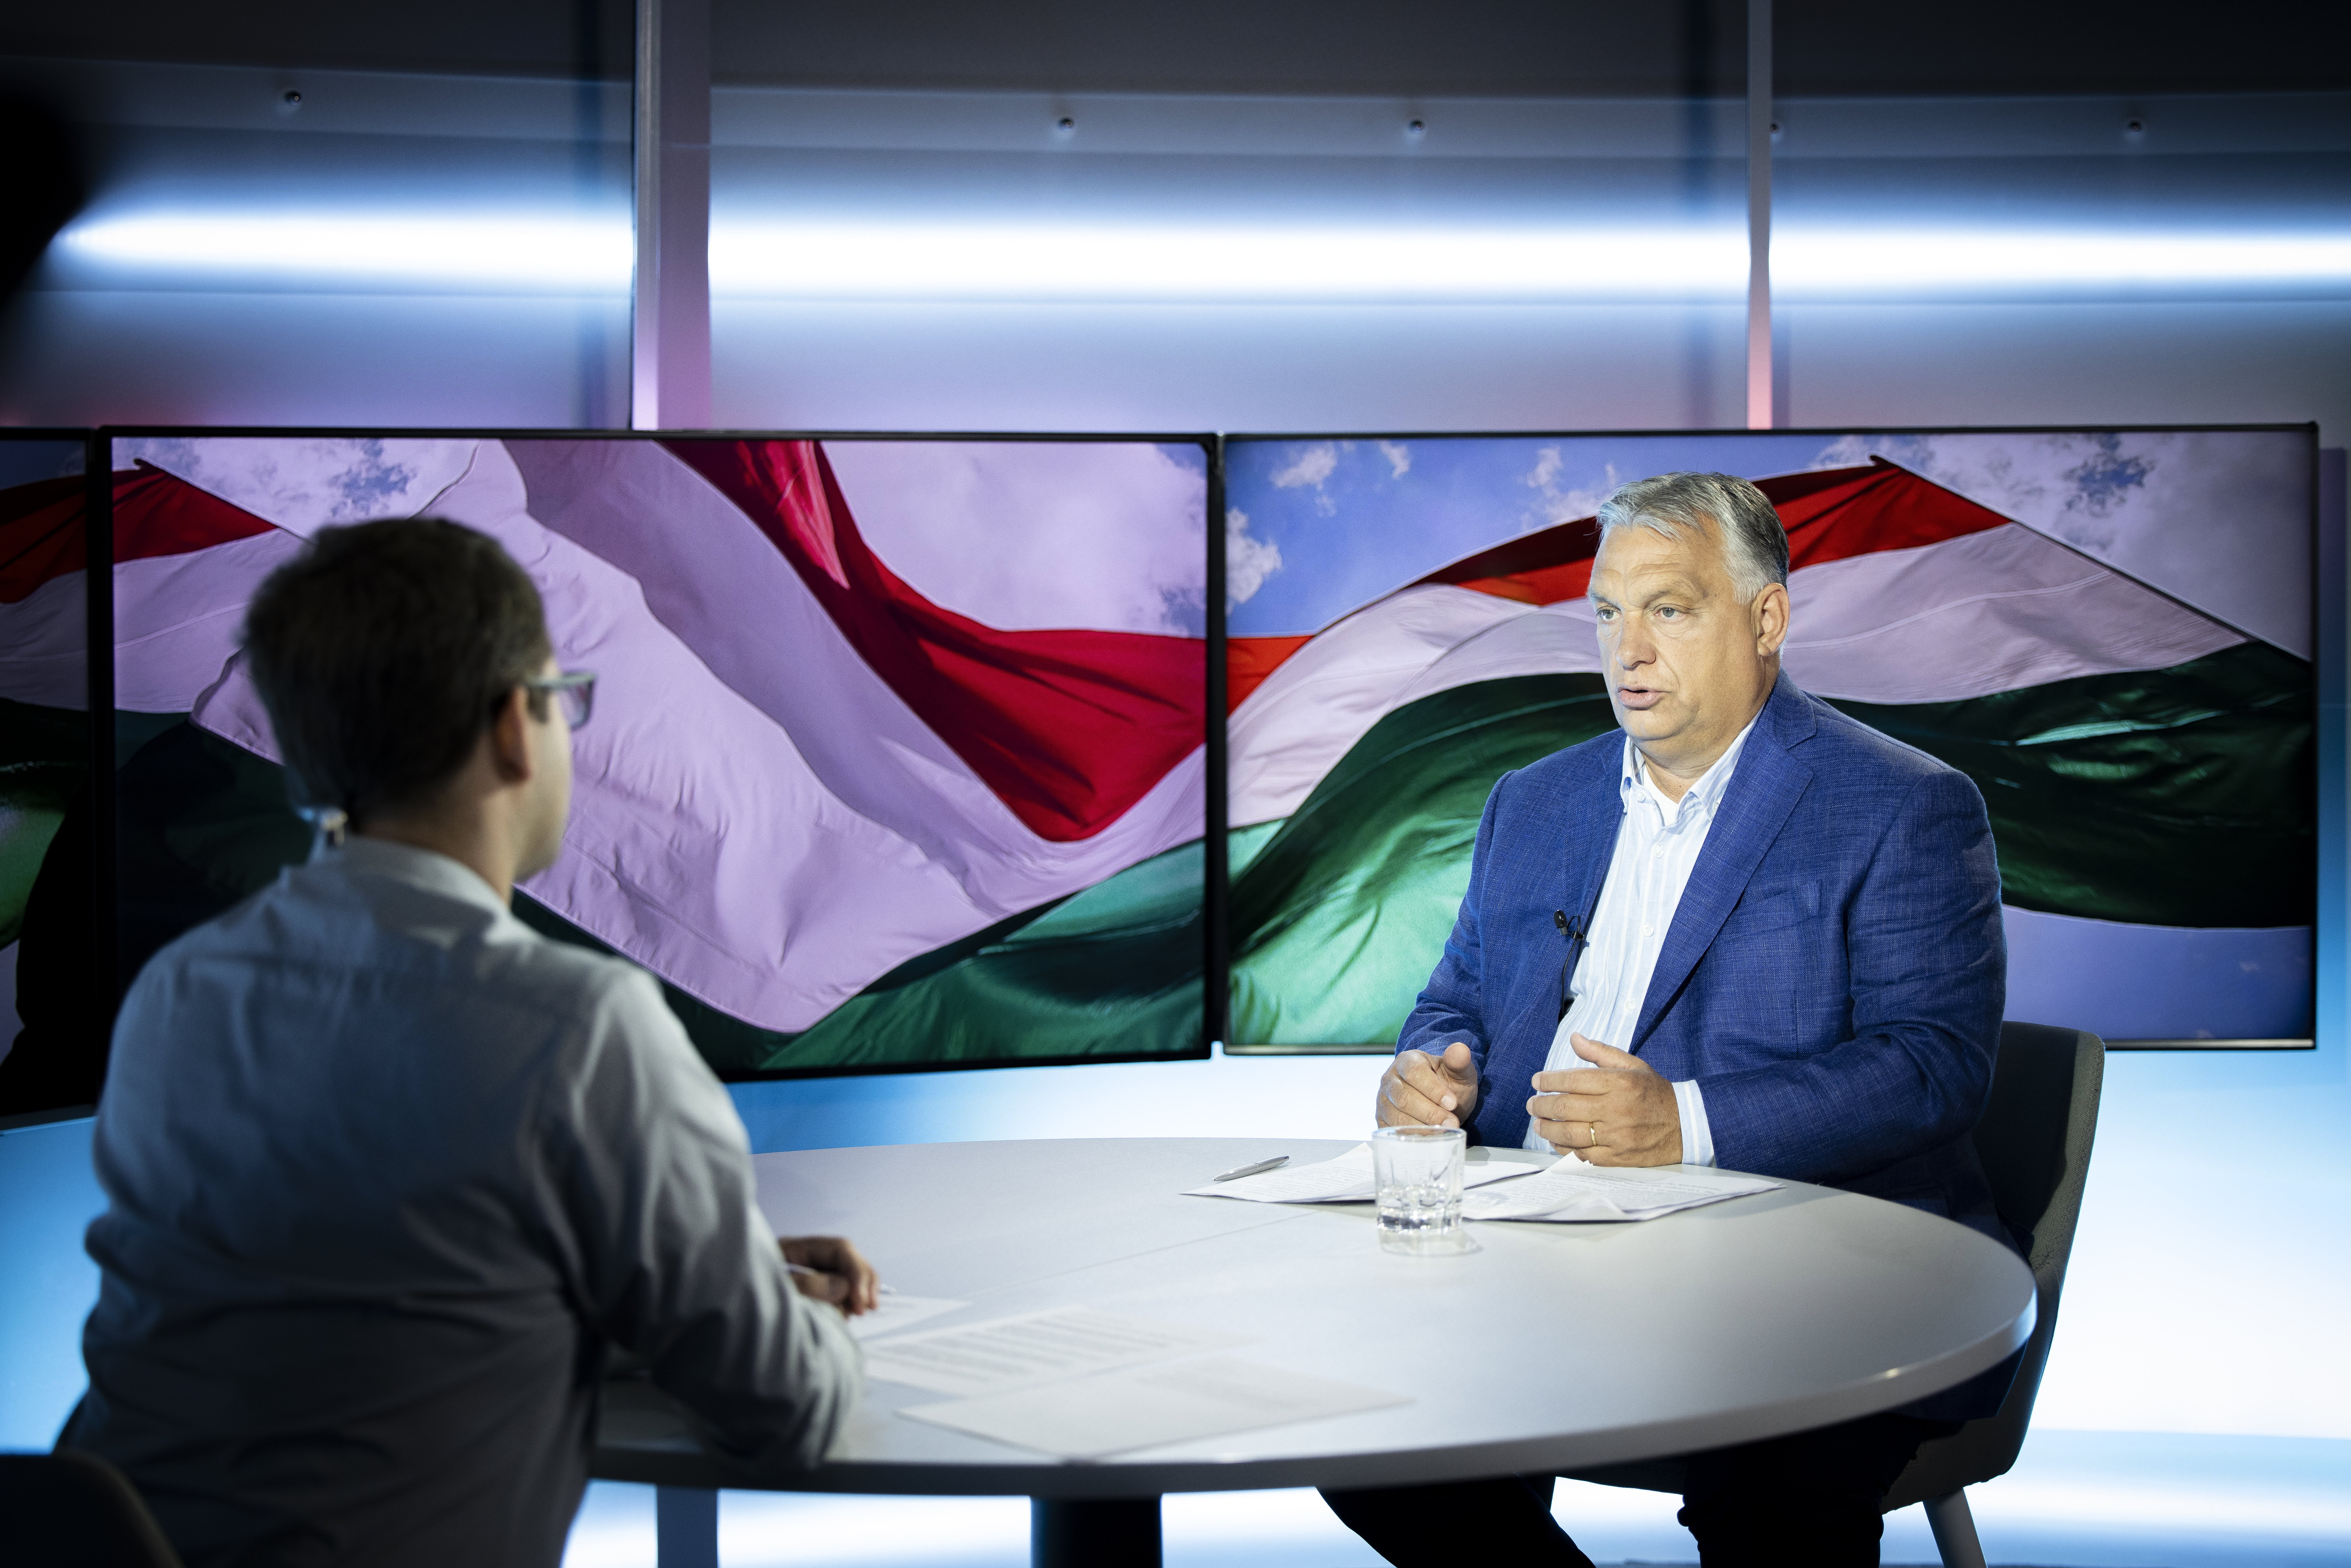 "Agresszívek, zsarolnak!"- Orbán Viktor nagyon berágott Zelenszkijre, tombolt miatta a Kossuth rádióban – Egy dologban azonban egyetért az ukrán elnökkel 